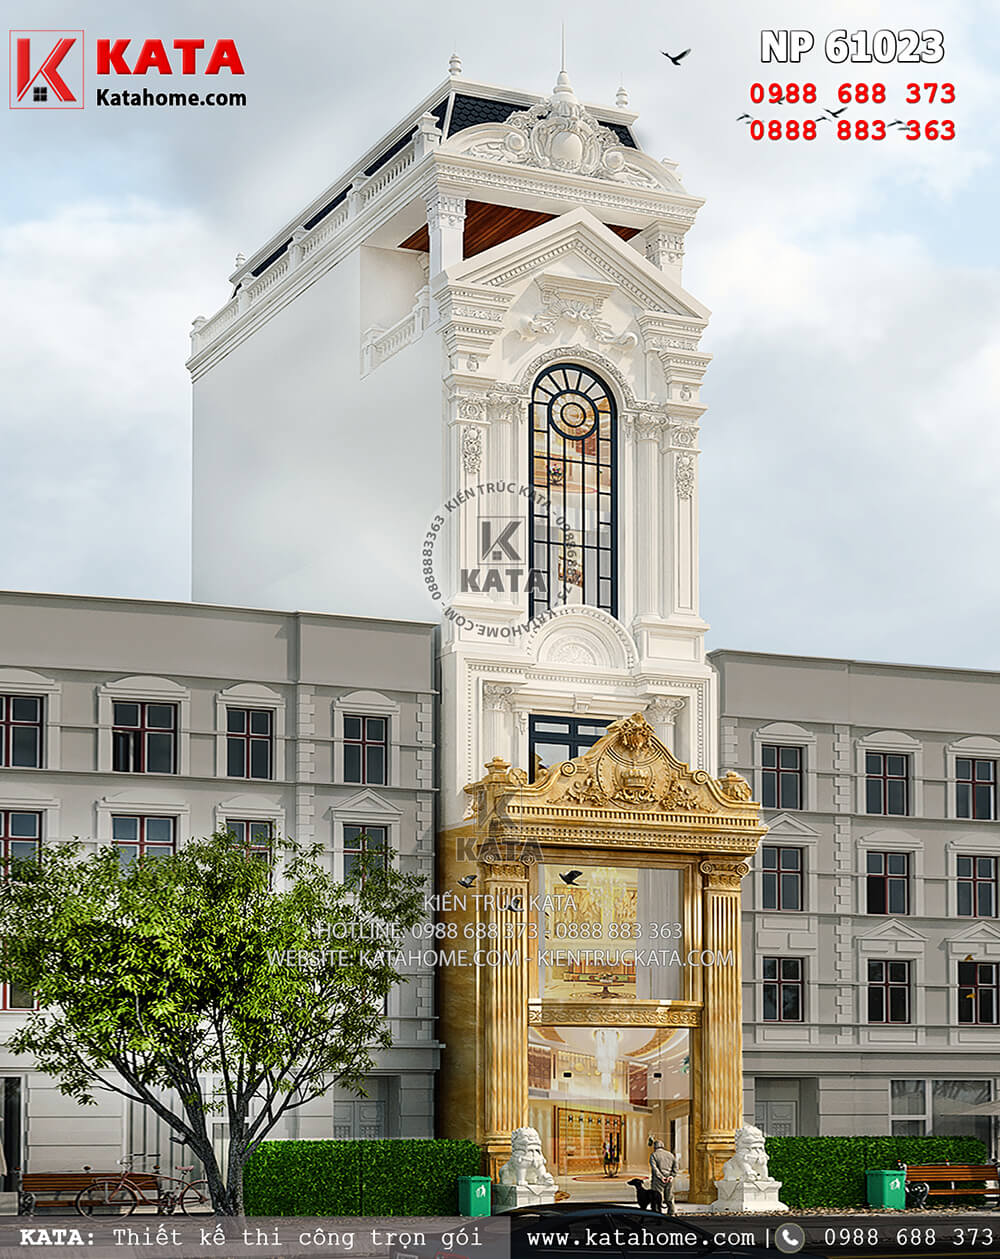 Phối cảnh ngoại thất của mẫu thiết kế nhà ống mặt tiền 5m mang phong cách kiến trúc Pháp tân cổ điển tại Hà Nội - Mã số: NP 61023